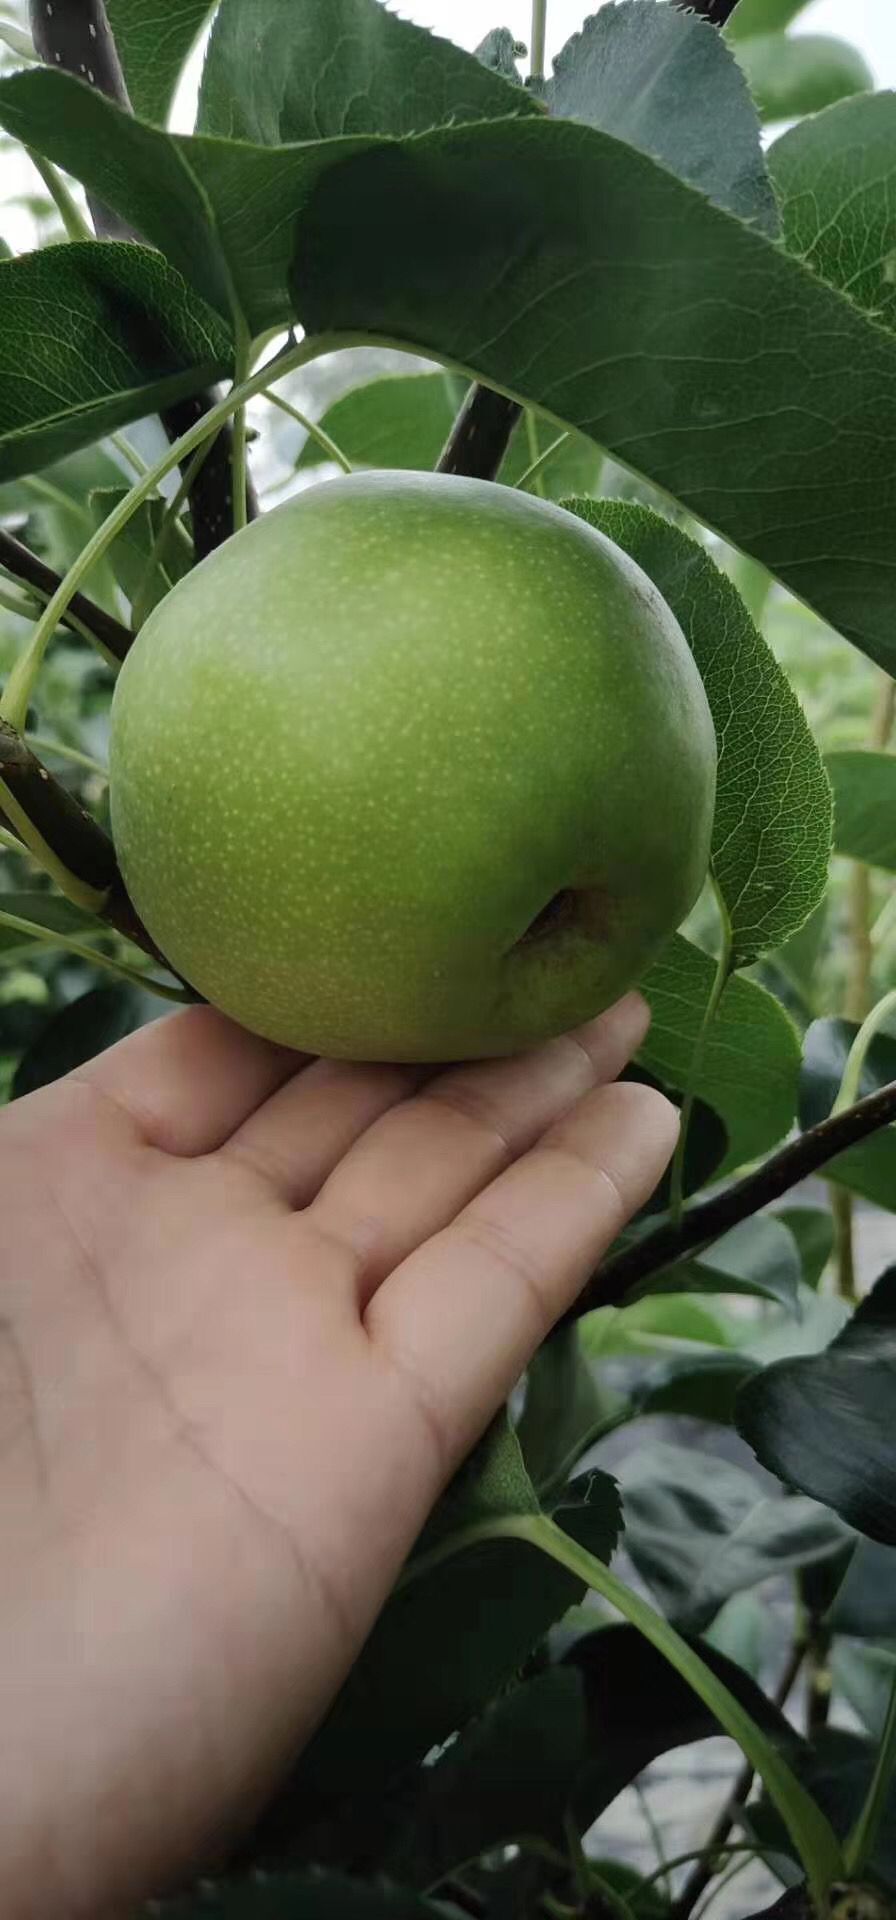 大兴安岭地区砀山酥梨苗品种特点 砀山酥梨苗